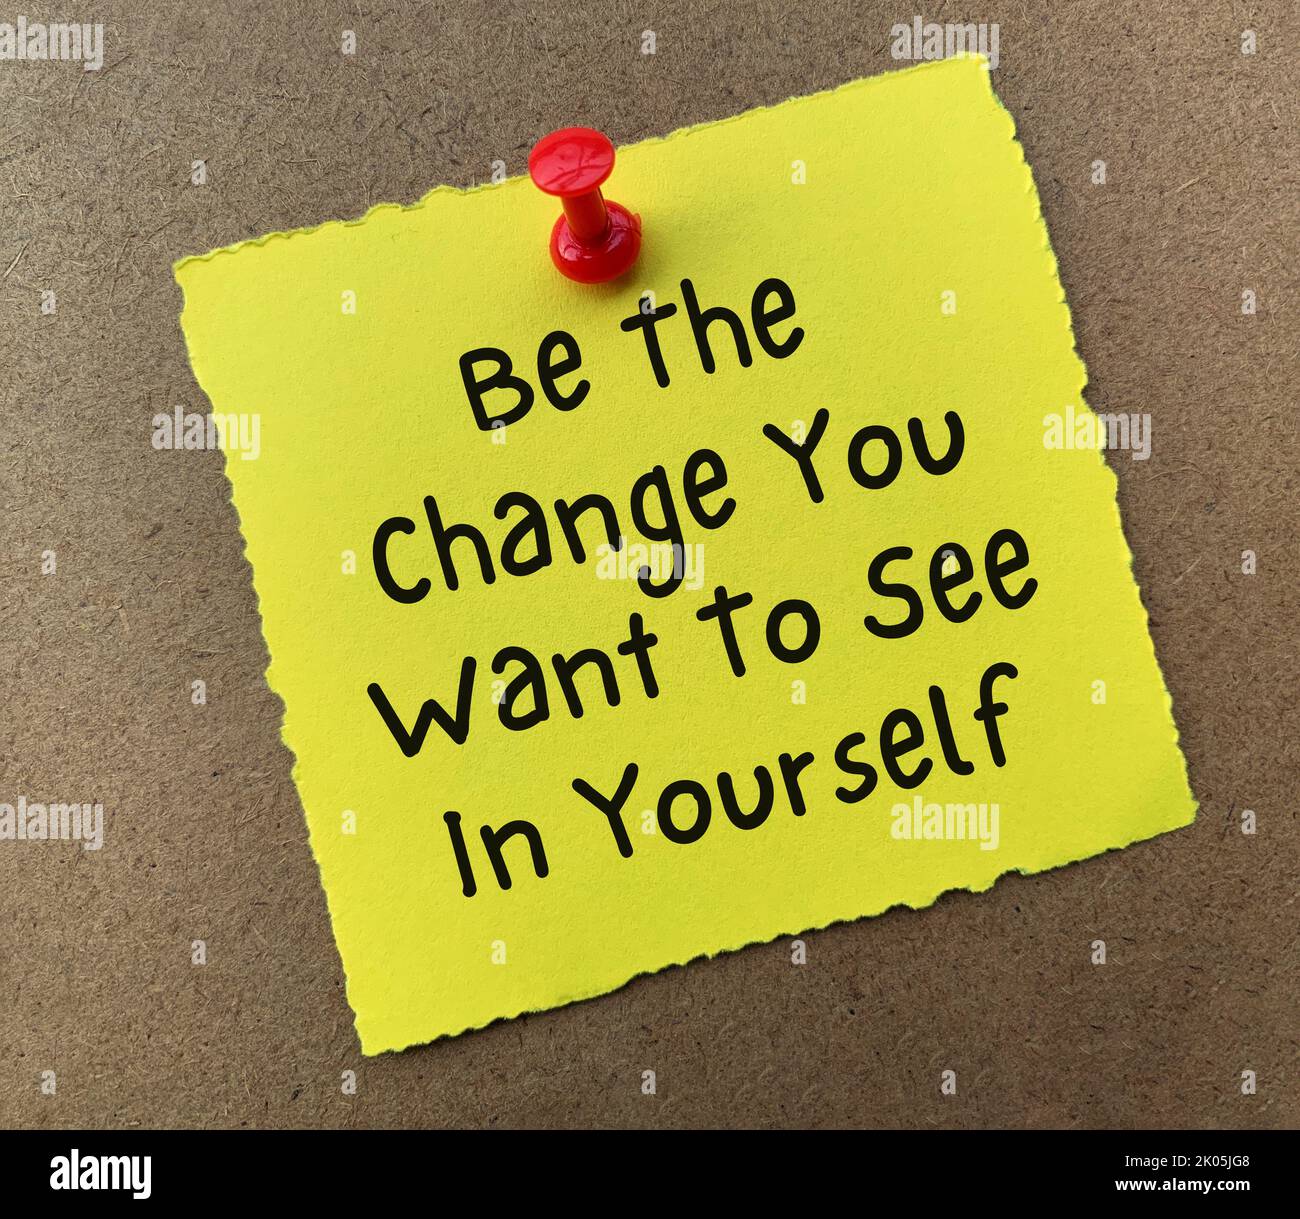 Motivierende und inspirierende Zitate Text auf gelbem Notizblock - seien Sie die Veränderung, die Sie in sich selbst sehen möchten. Stockfoto